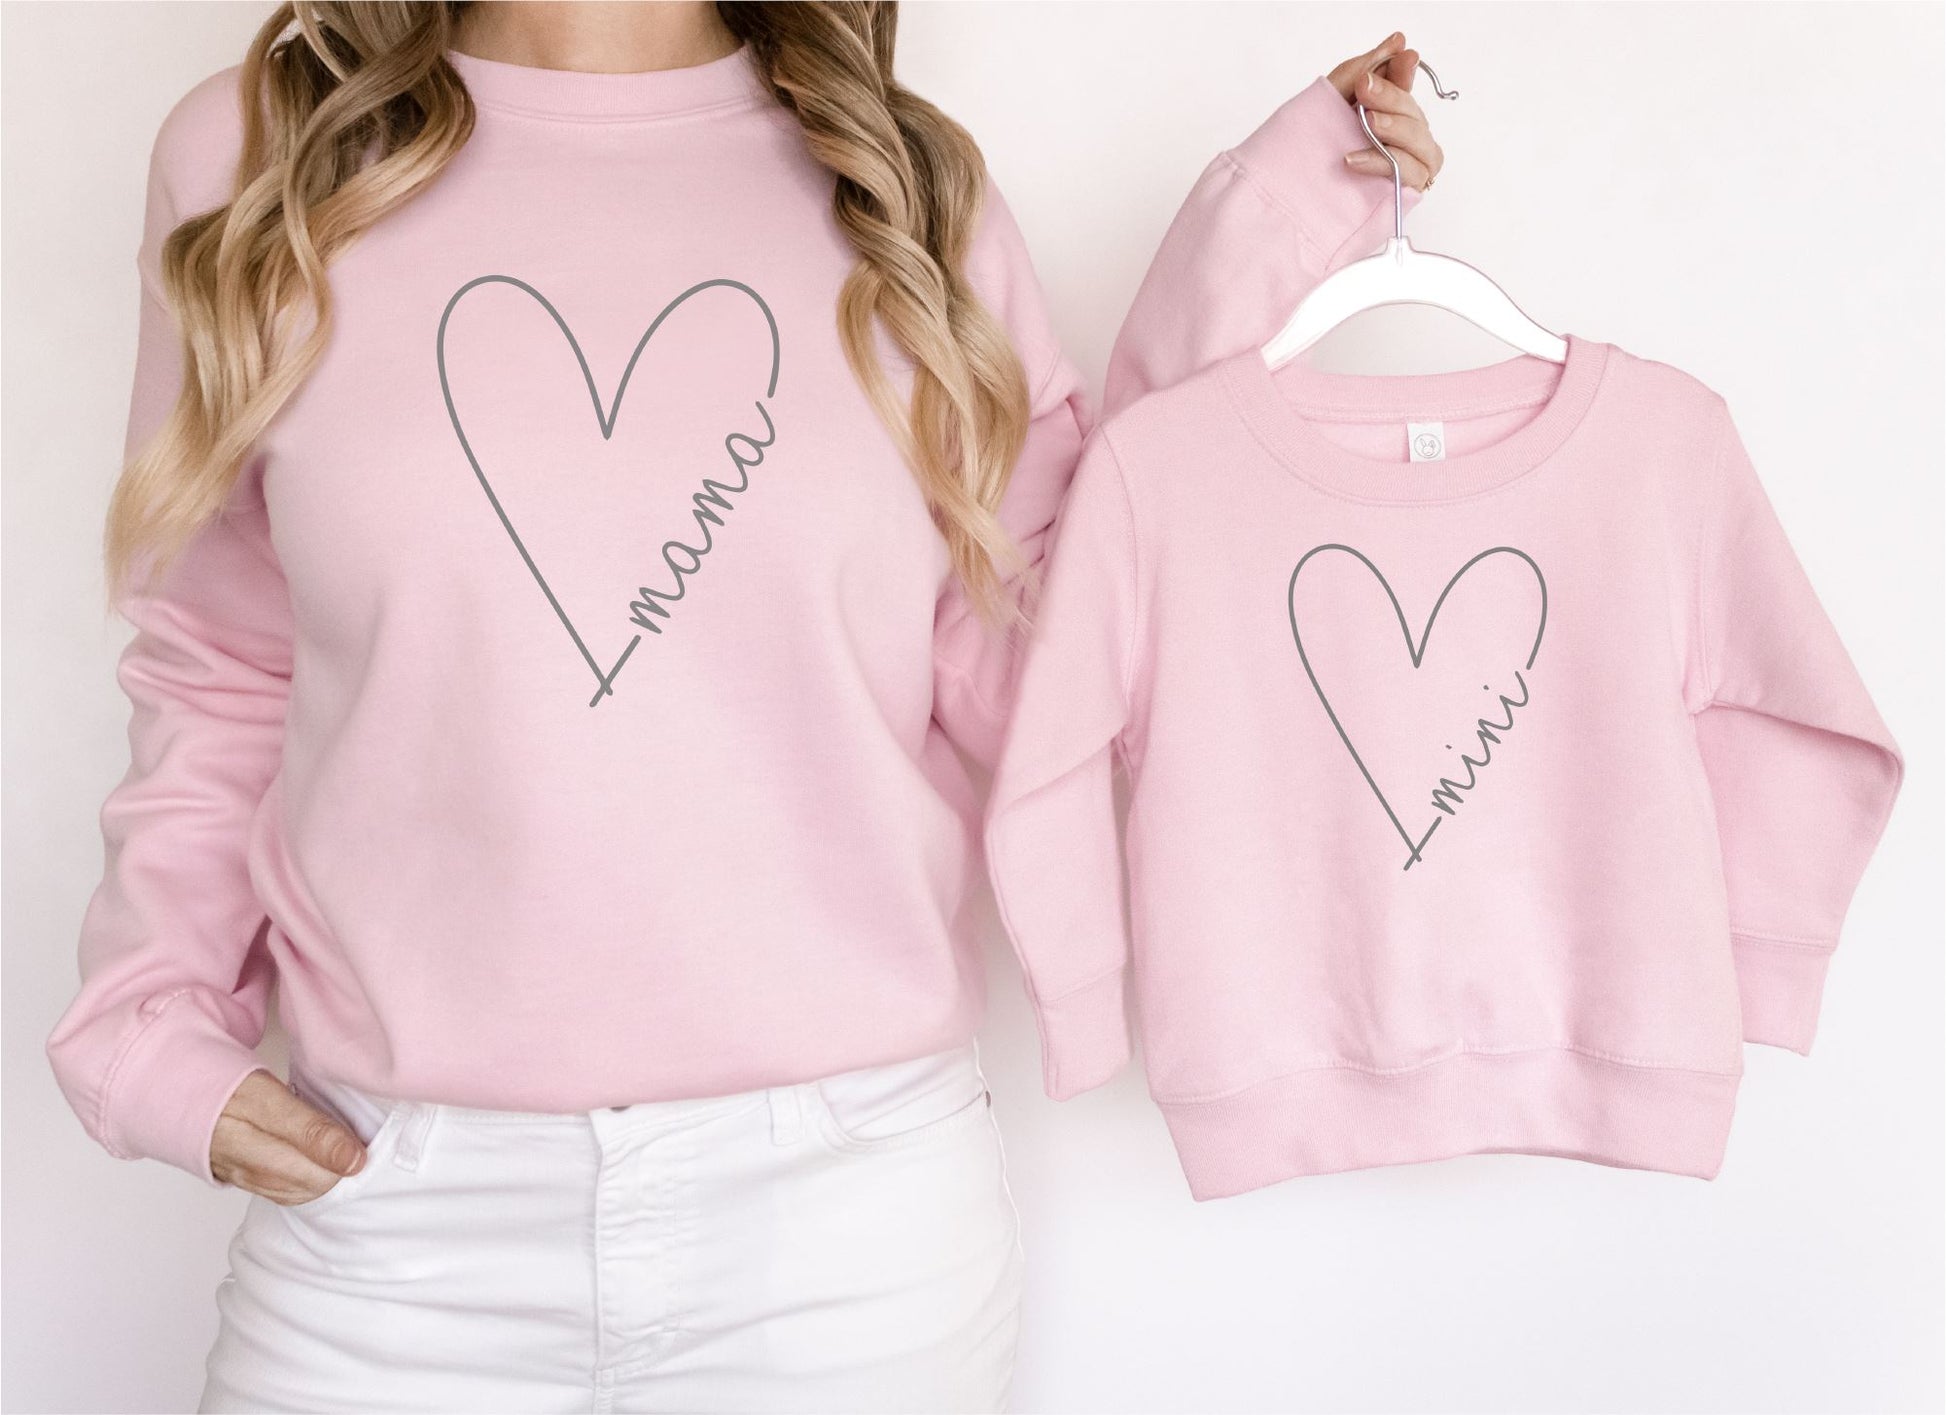 Matching Mama Mini Heart Sweatshirts